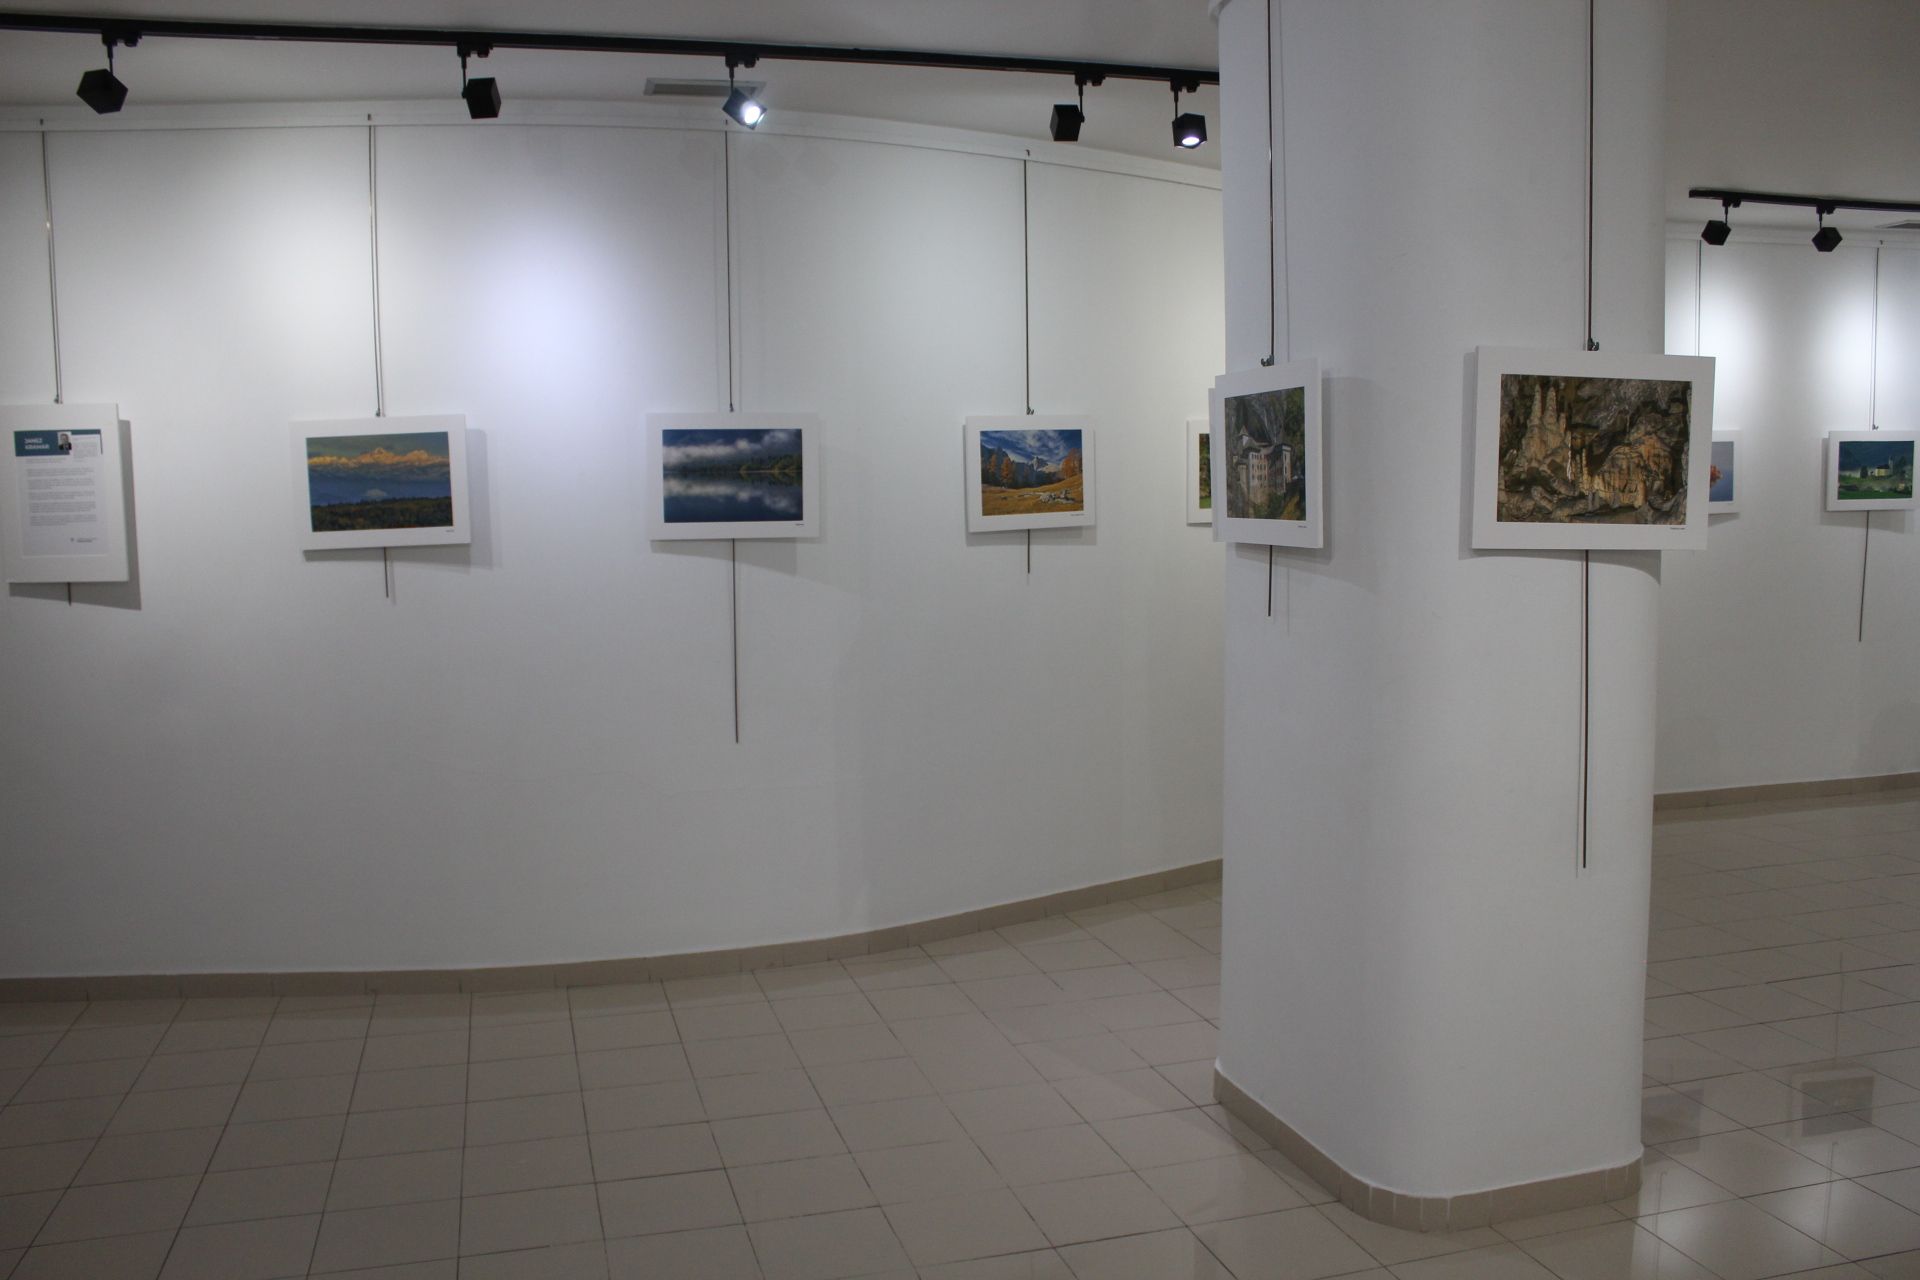 Presentación de la exposición "Maravillas de Eslovenia" de Janez Kramar